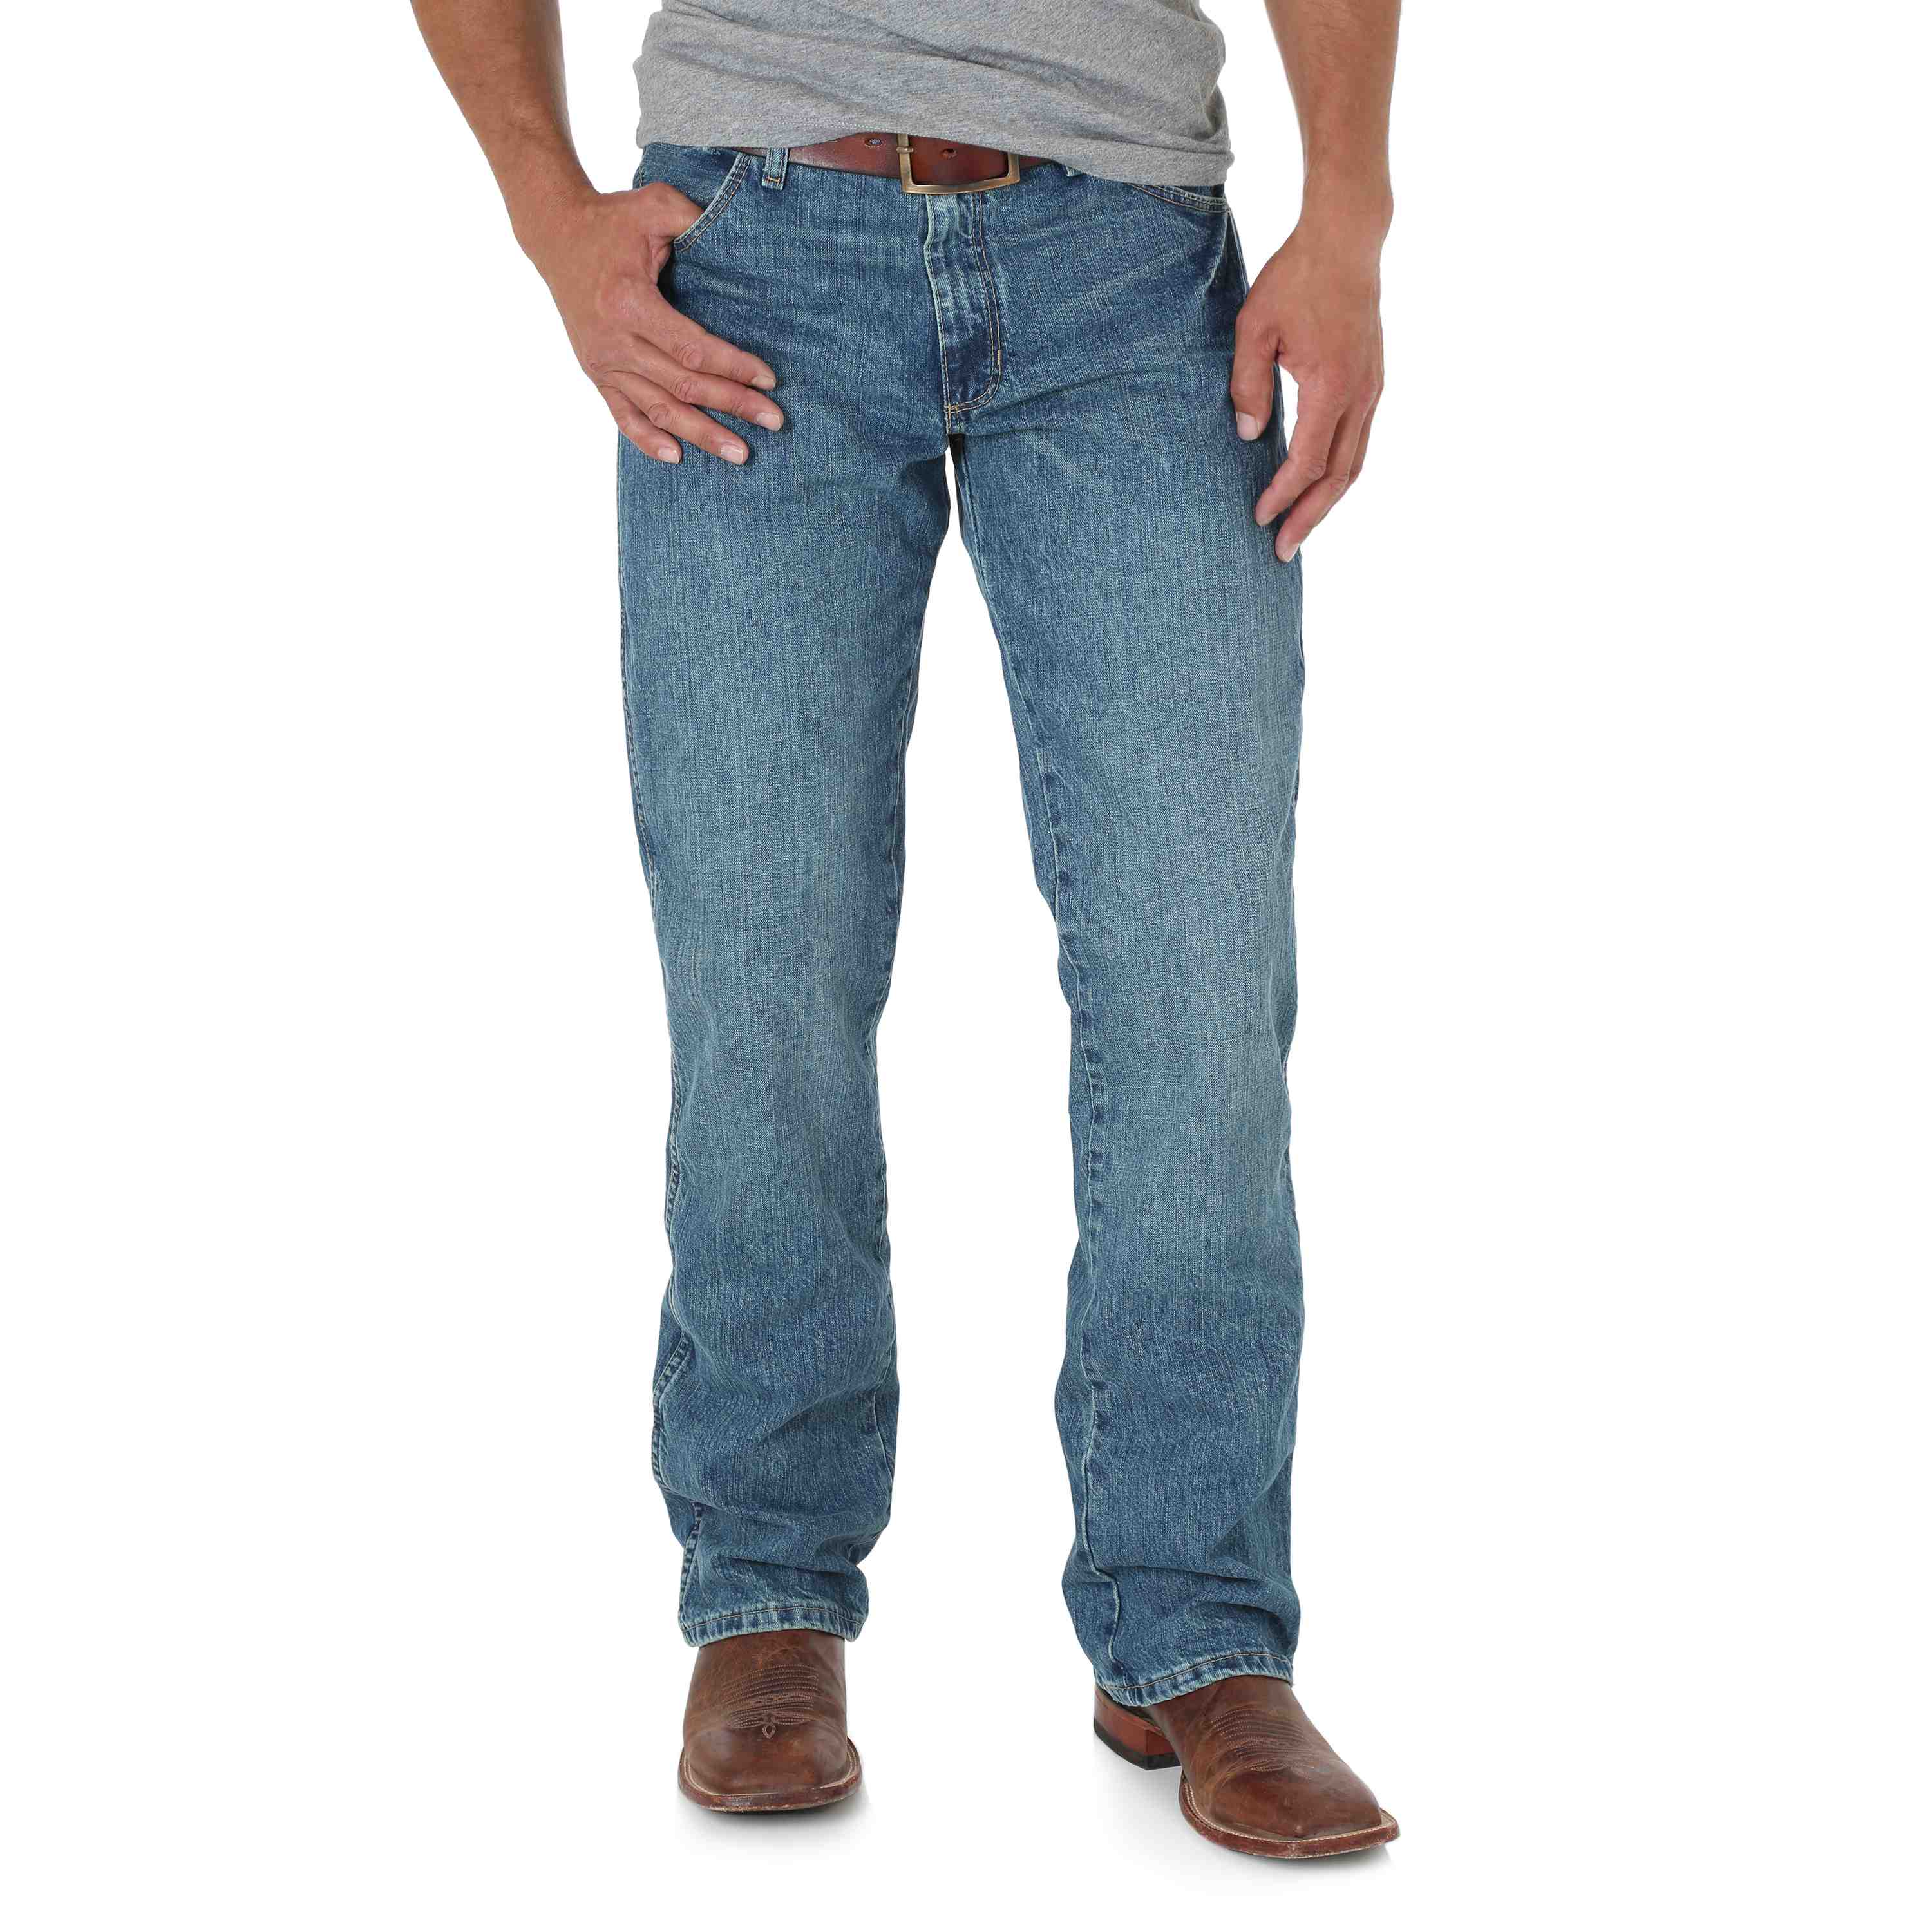 Wrangler Retro Slim-Fit Bootcut Jeans for Men